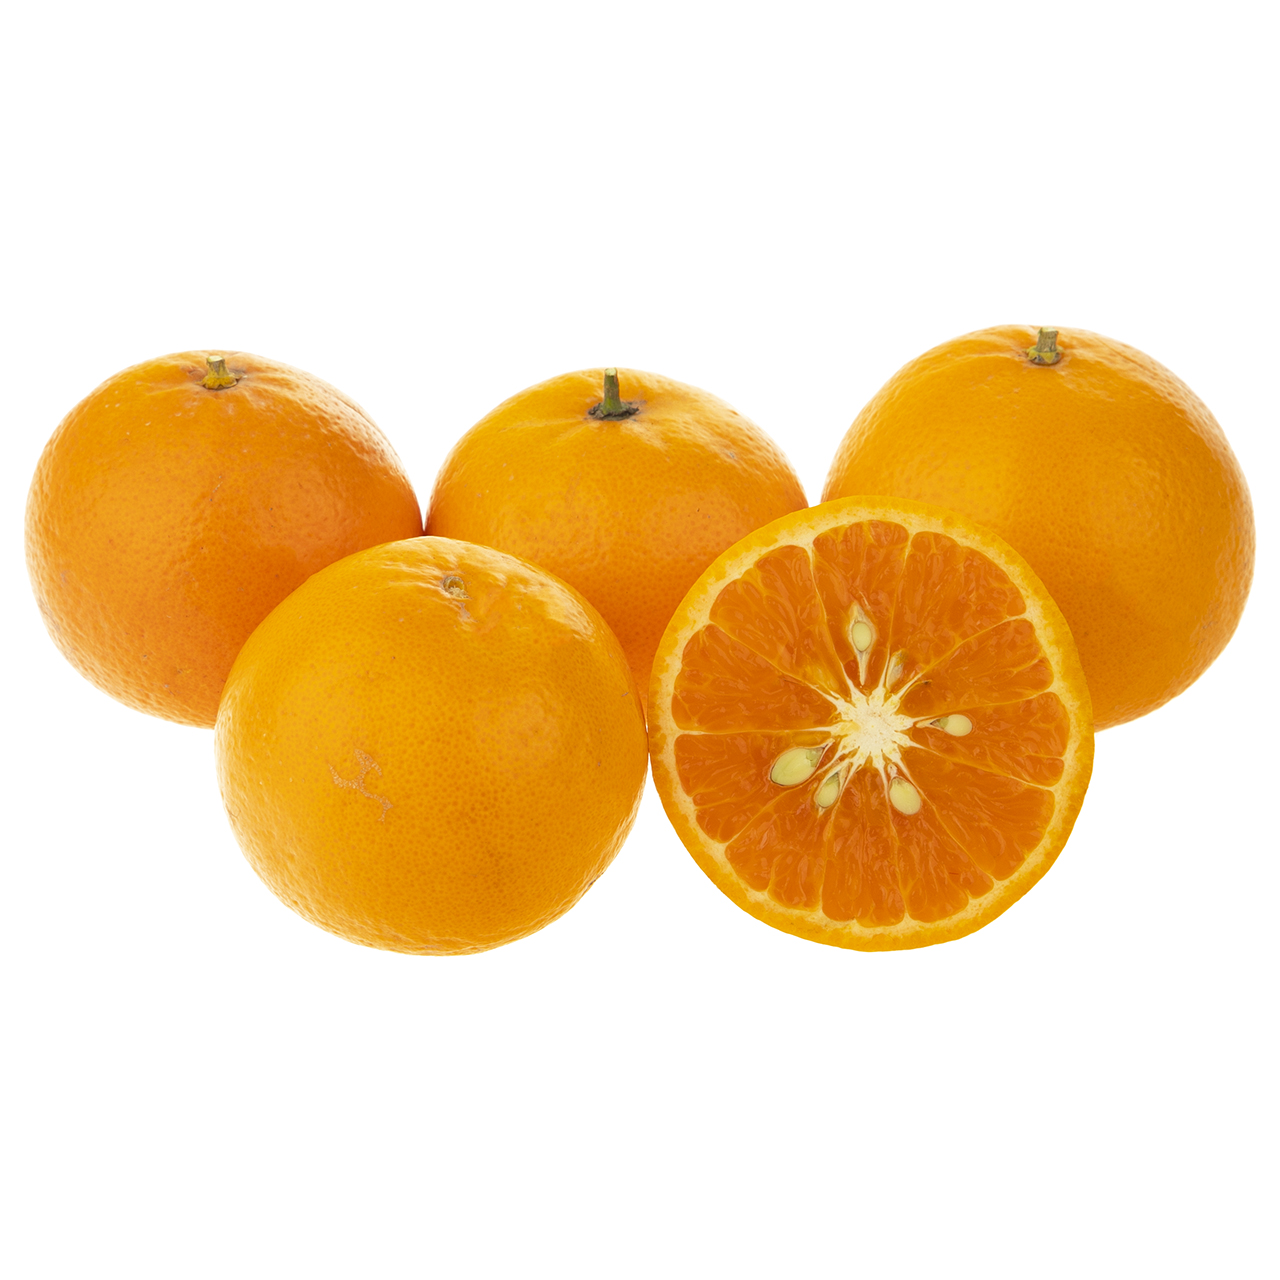 نارنگی پاکستانی مقدار 1 کیلوگرم - (حداقل 5 عدد)